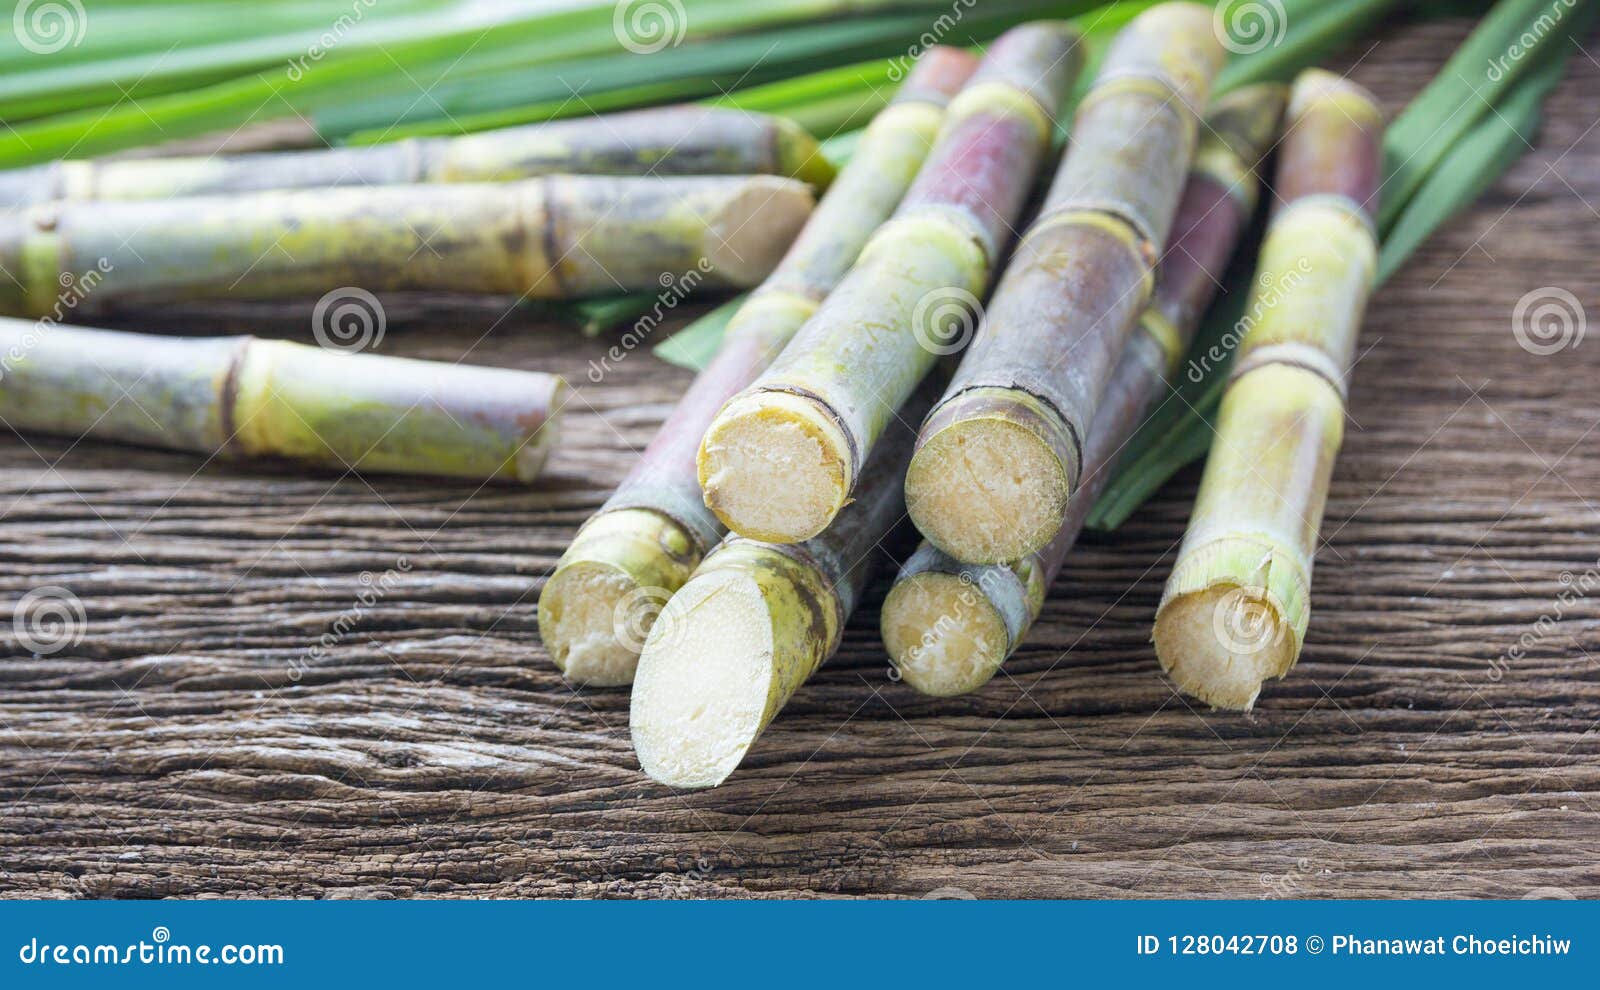 close up sugarcane on wood background close up.